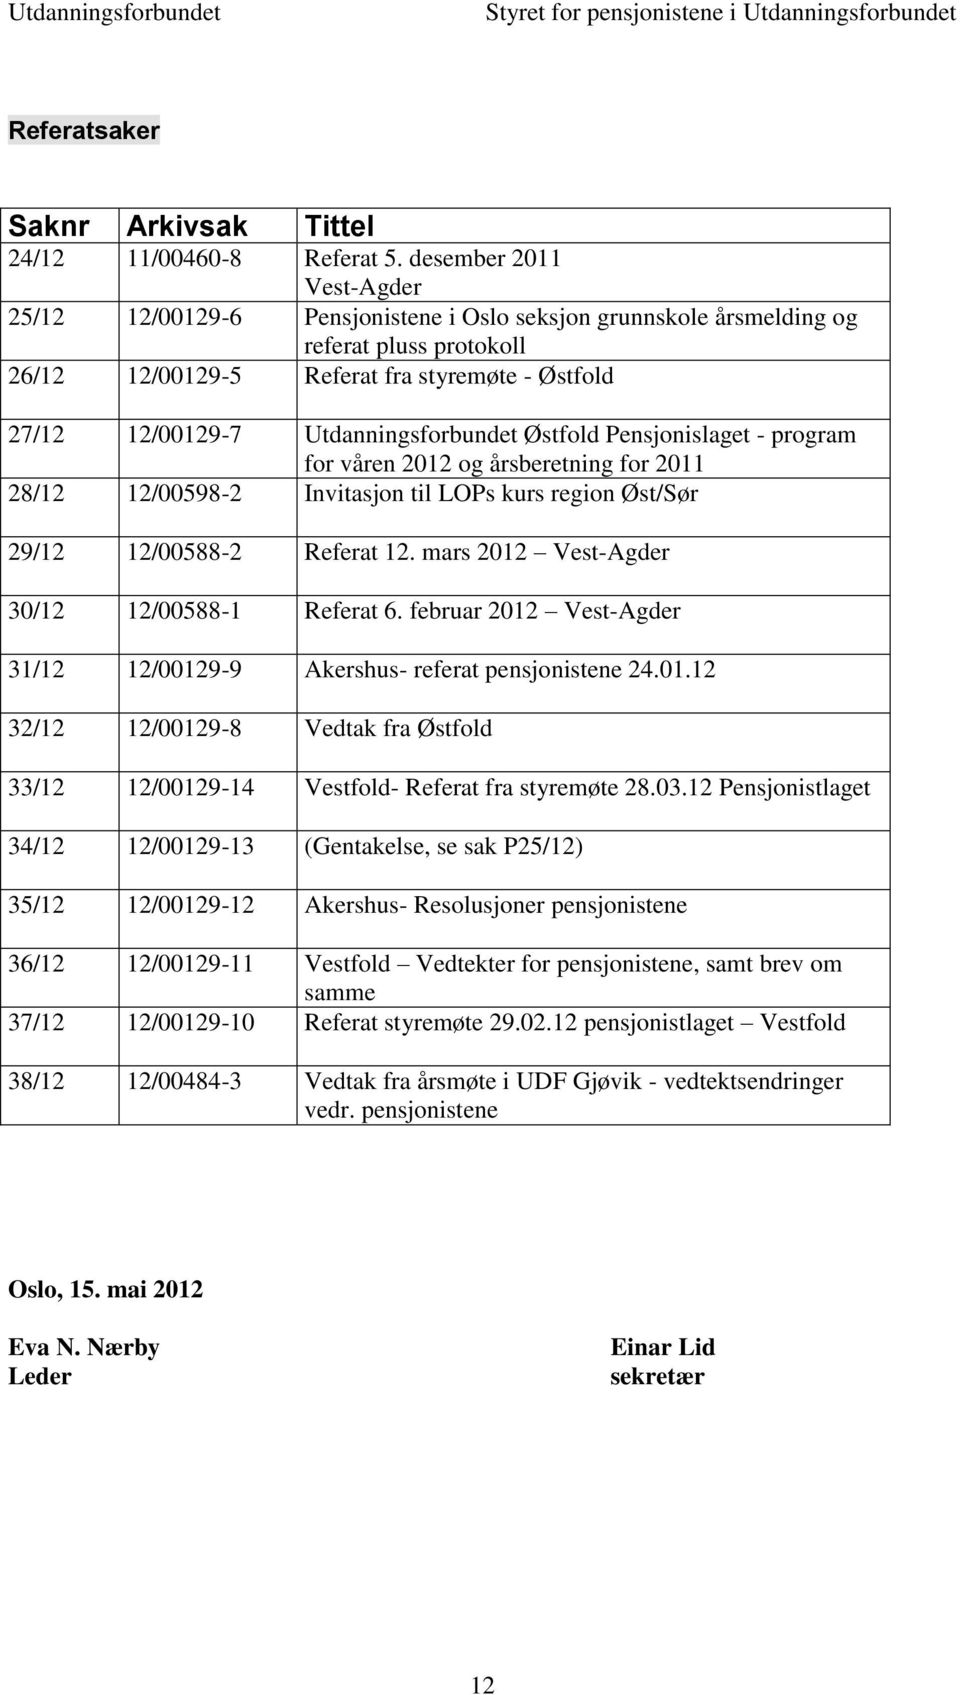 Utdanningsforbundet Østfold Pensjonislaget - program for våren 2012 og årsberetning for 2011 28/12 12/00598-2 Invitasjon til LOPs kurs region Øst/Sør 29/12 12/00588-2 Referat 12.